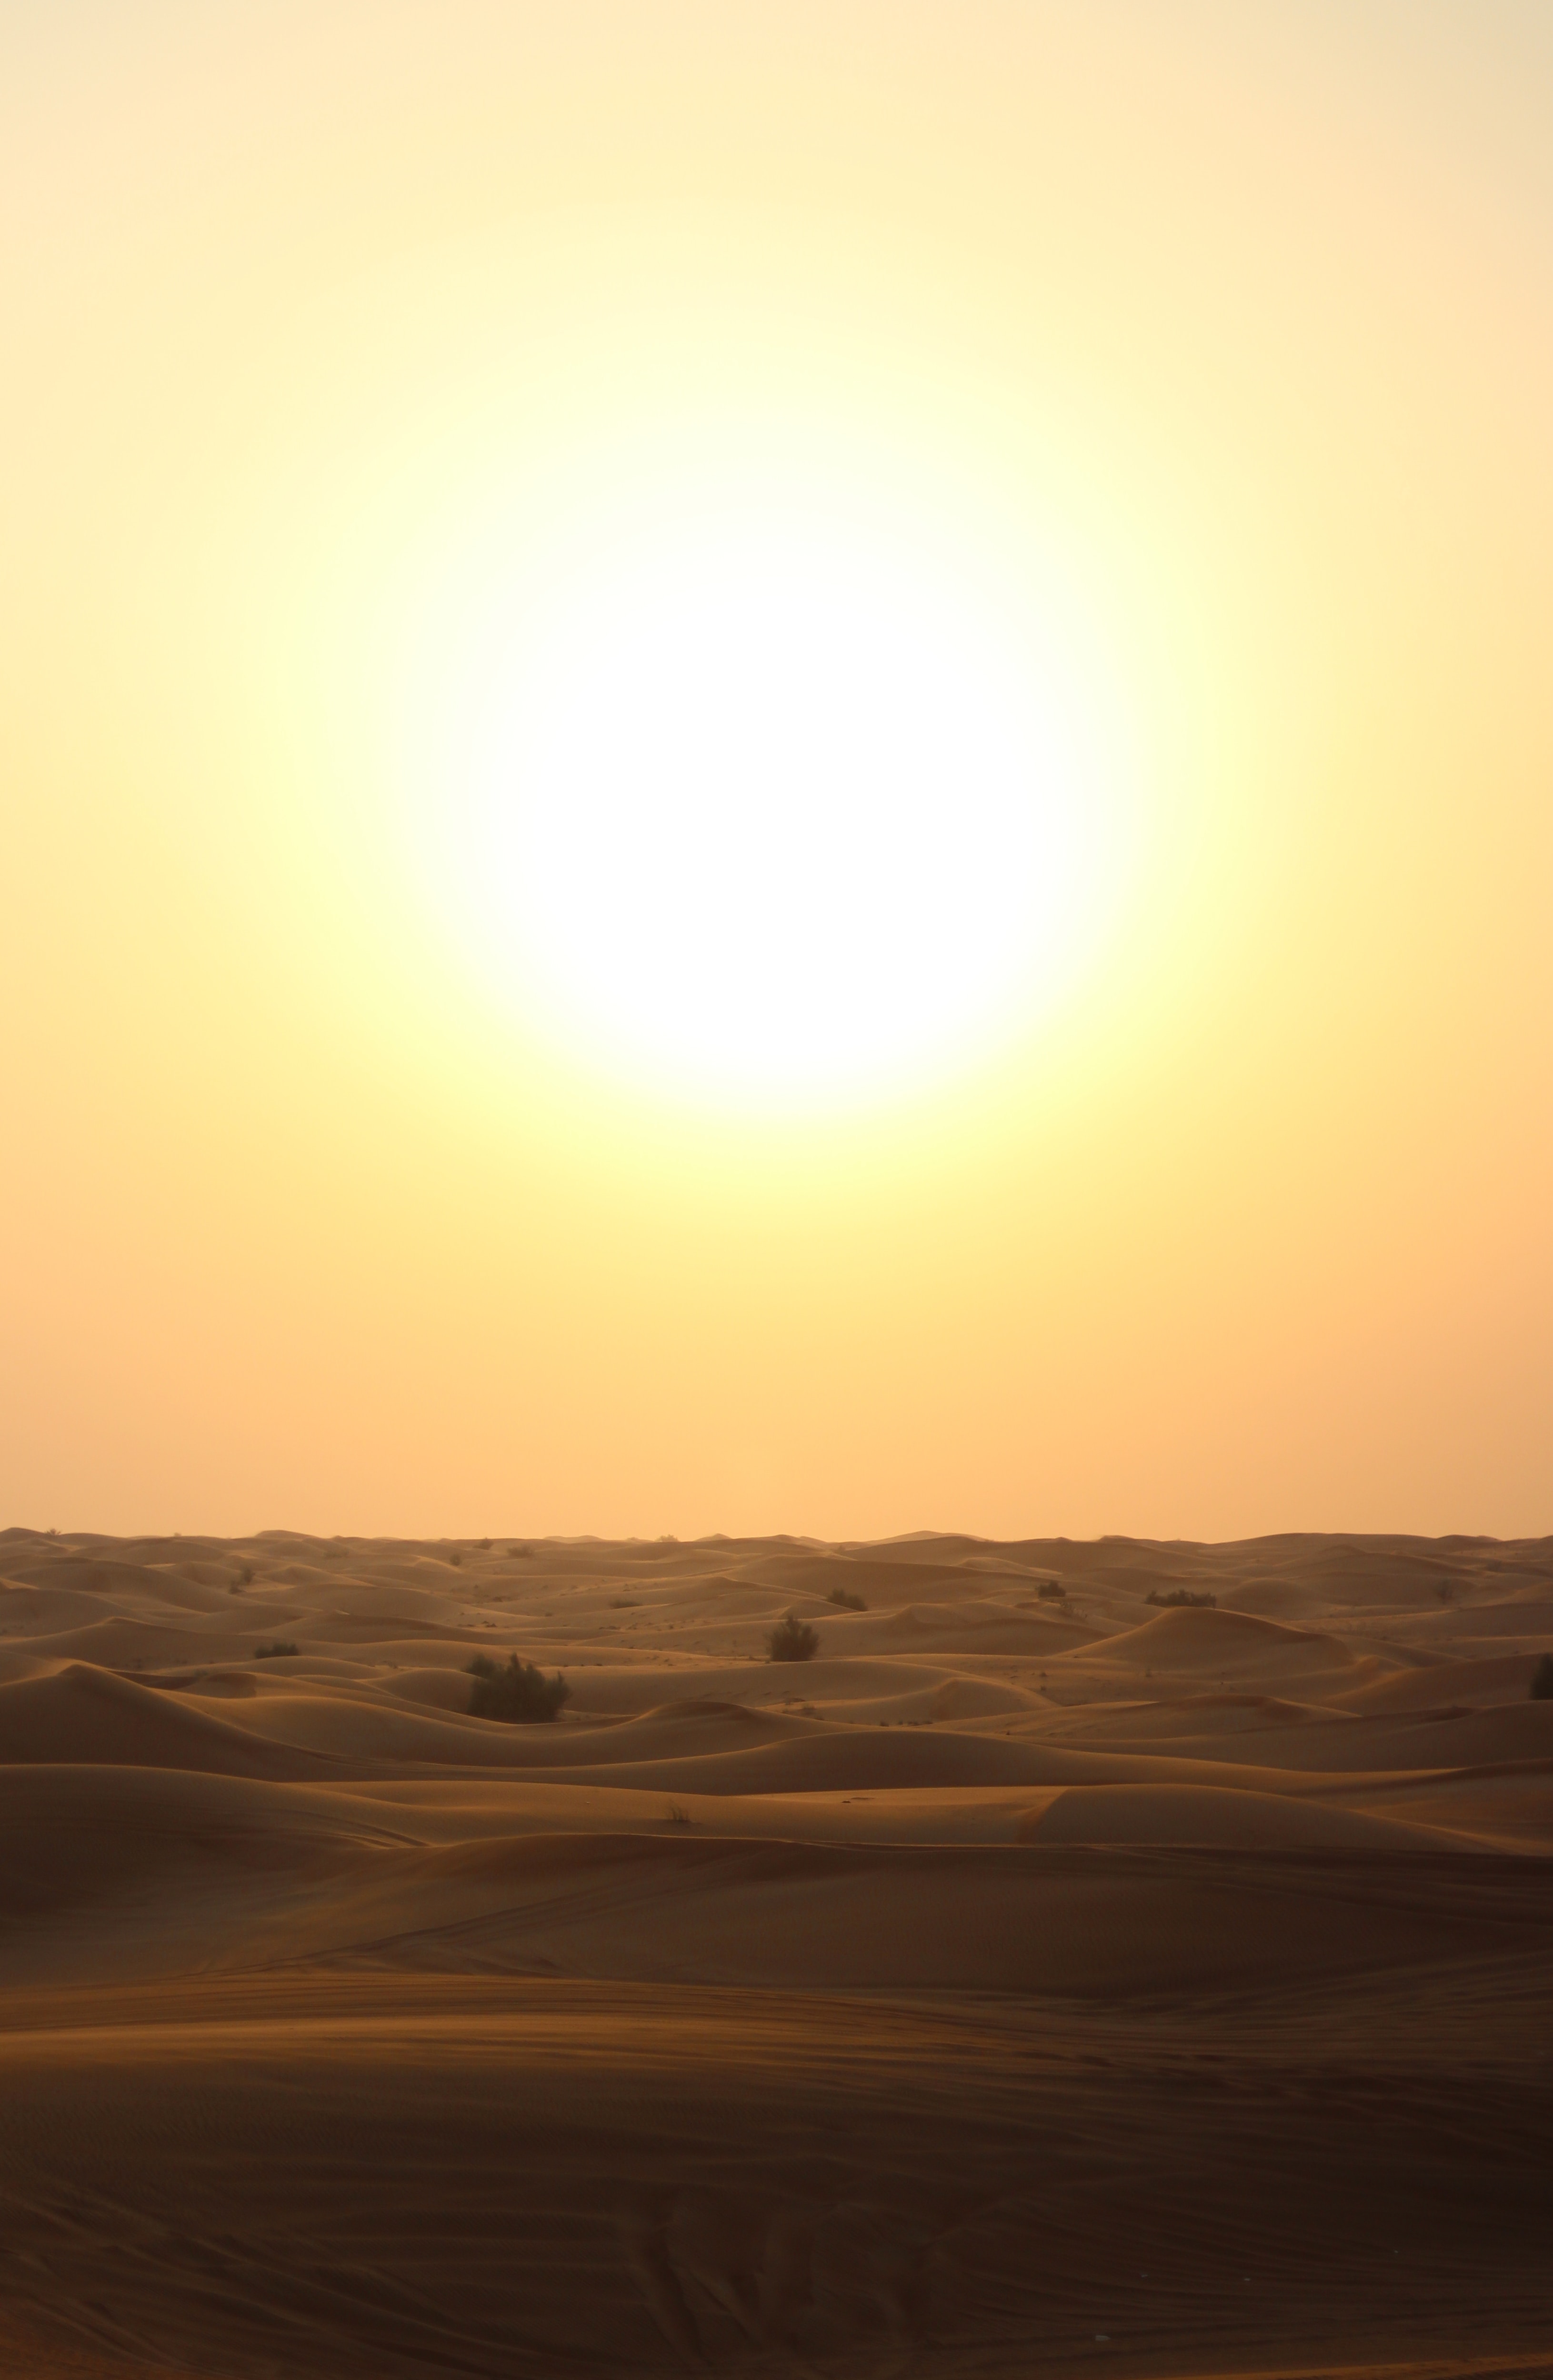 The scorching sun beats down on a desert